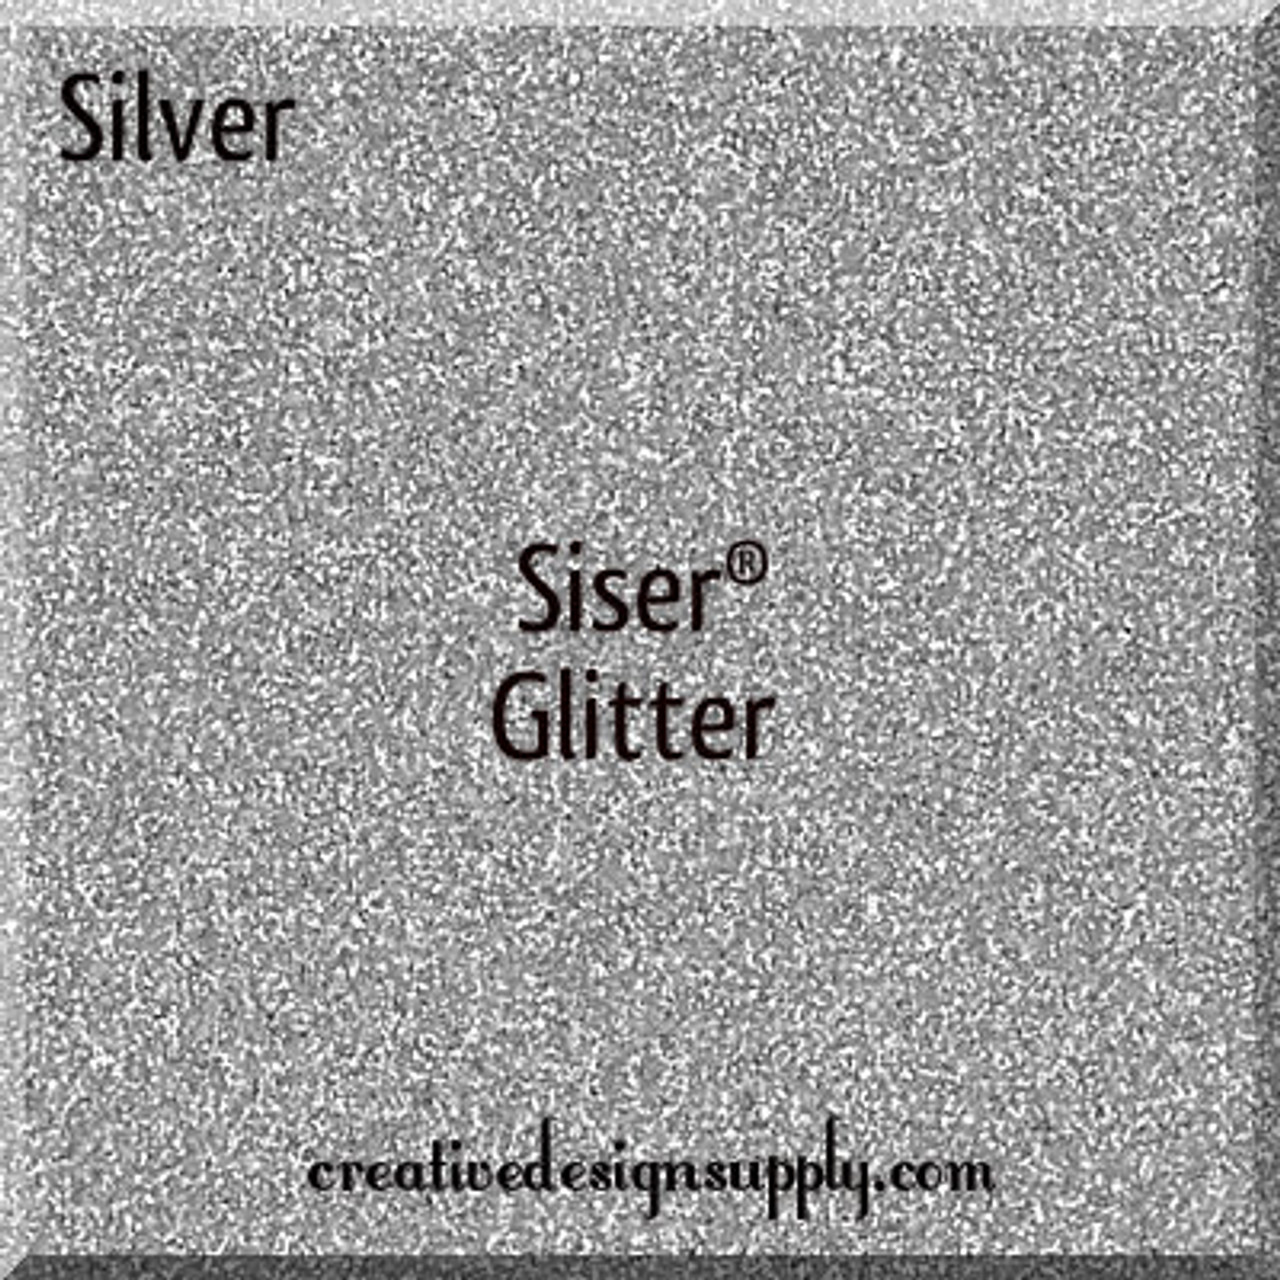 Silver Siser Glitter 20"